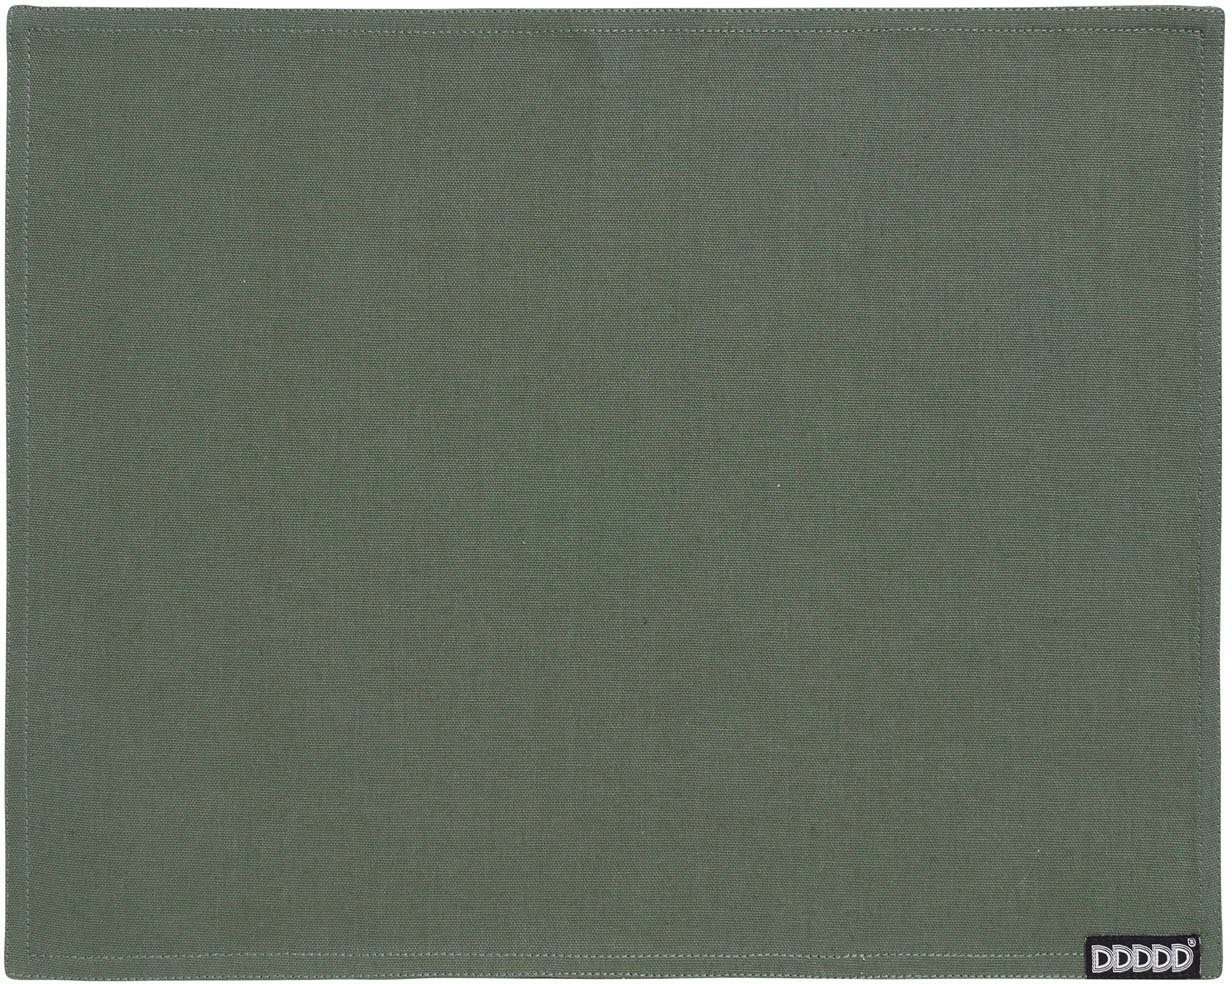 Platzset, Kit, Baumwolle (Set, 2-St), cm, tannengrün DDDDD, 35x45 Platzdecke